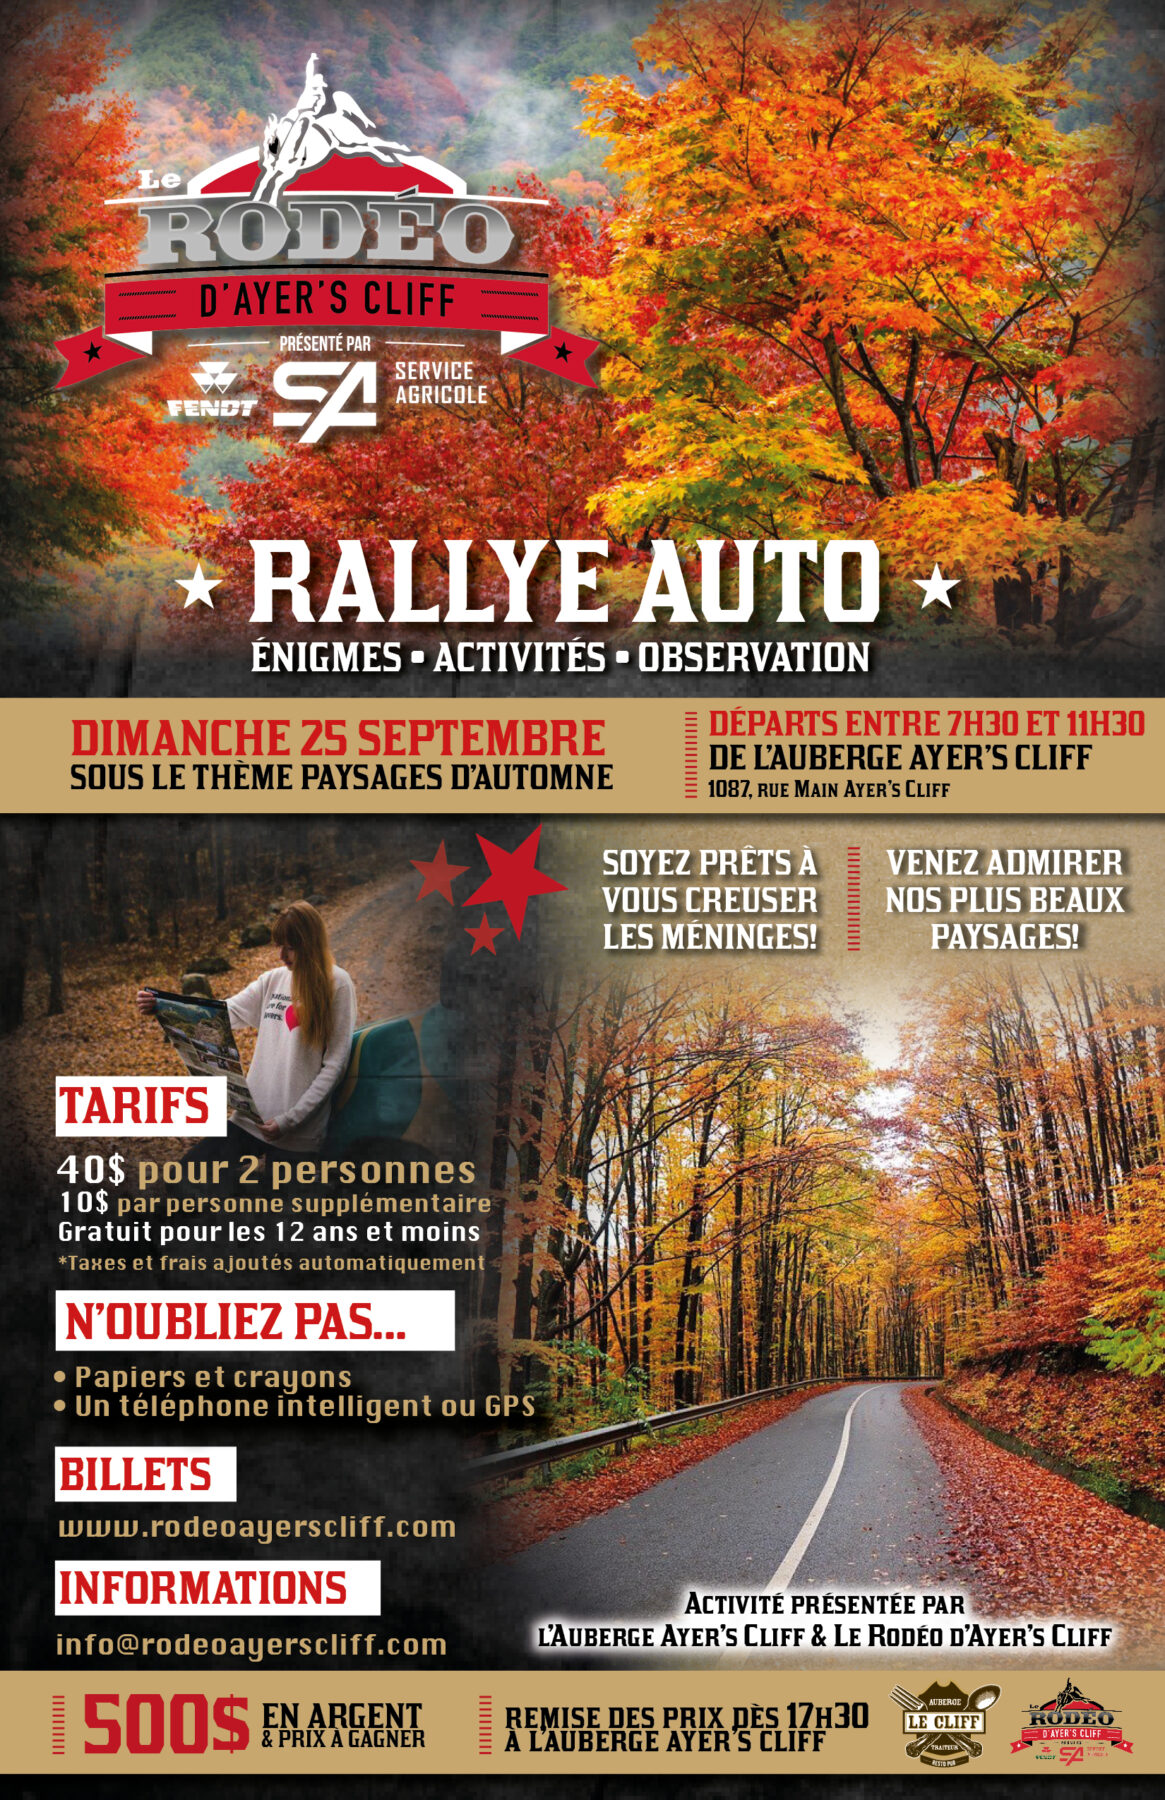 Rallye Auto - Événements spéciaux du Rodéo d'Ayer's Cliff